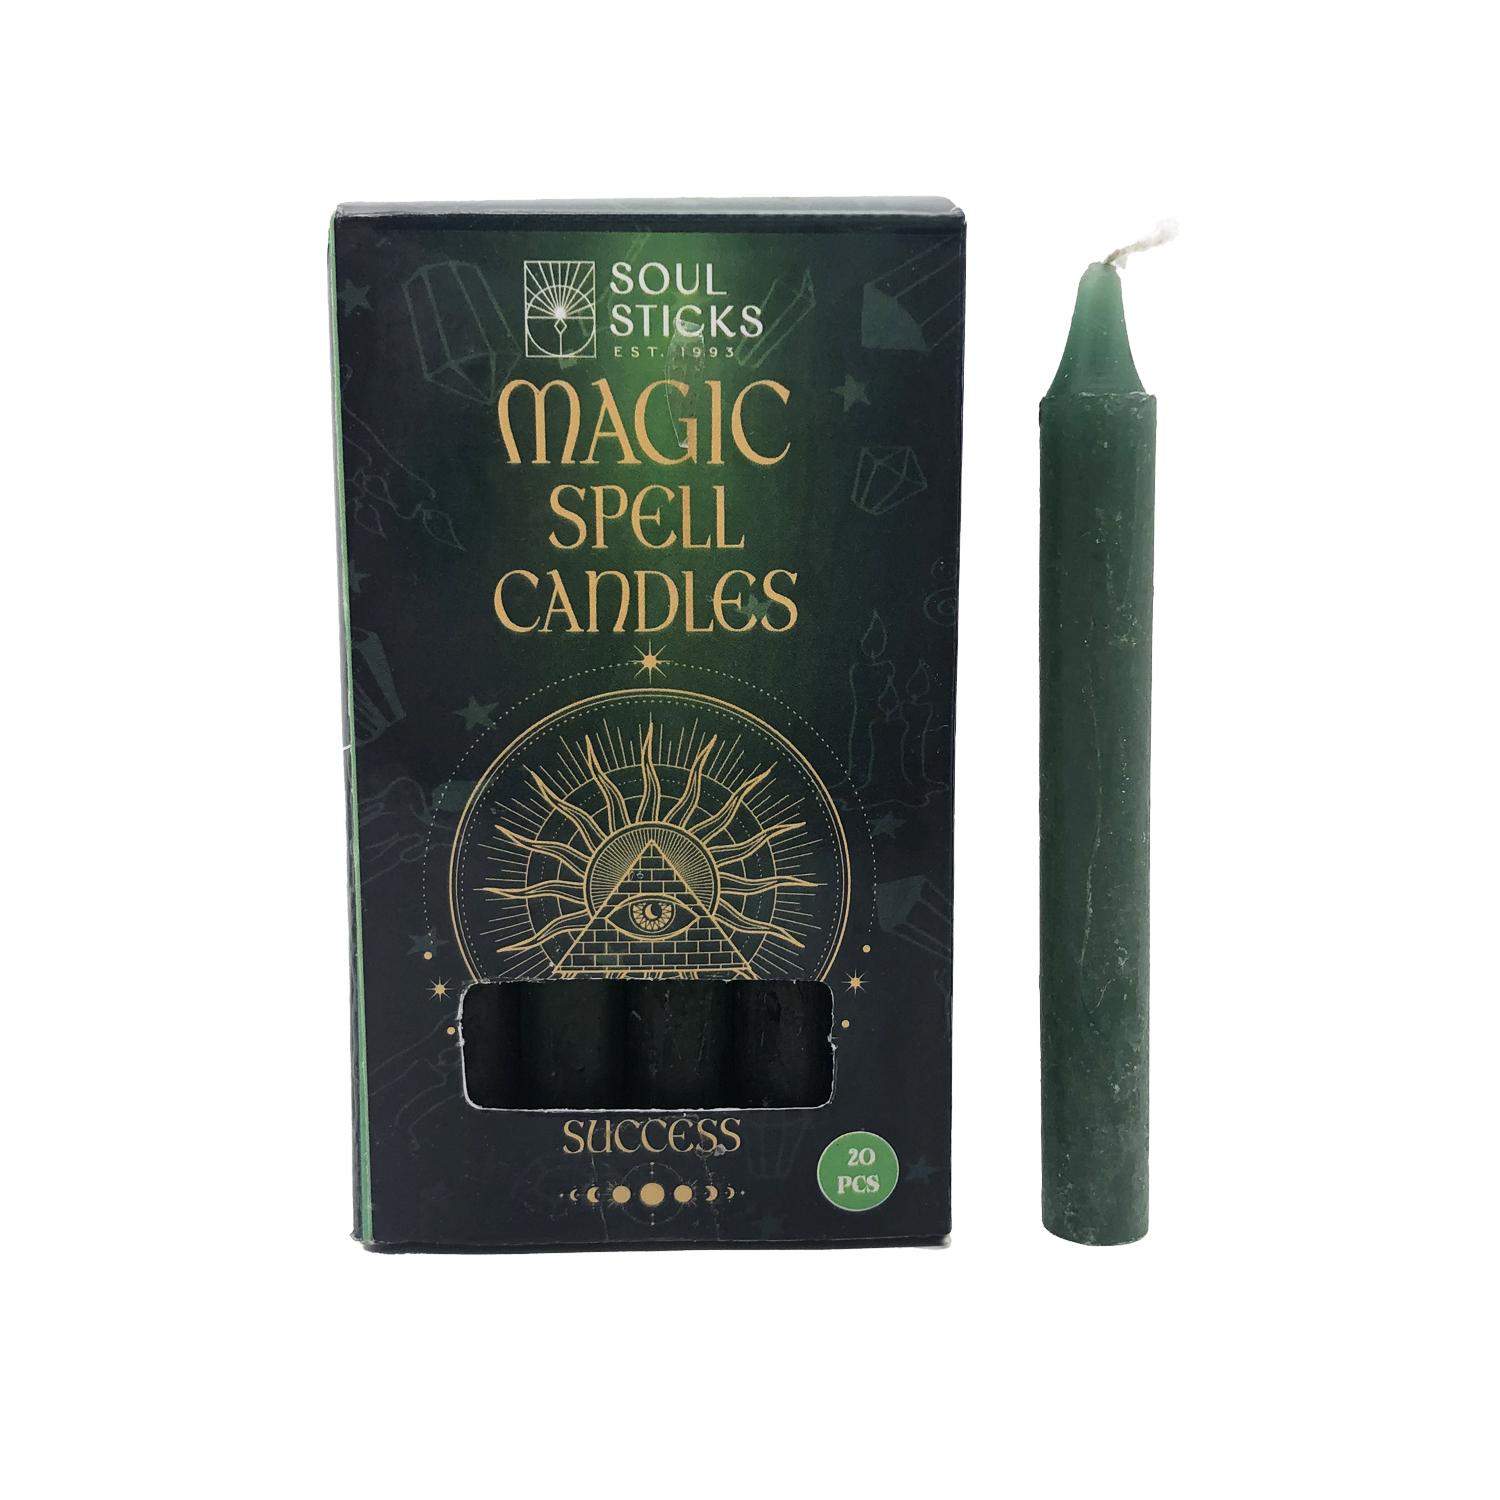 20件裝深綠色印度魔法蠟燭(成功SUCCESS) 2小時彩色蠟燭 錐形蠟燭 靈魂棒 AD-CANDLE-SUCCESS